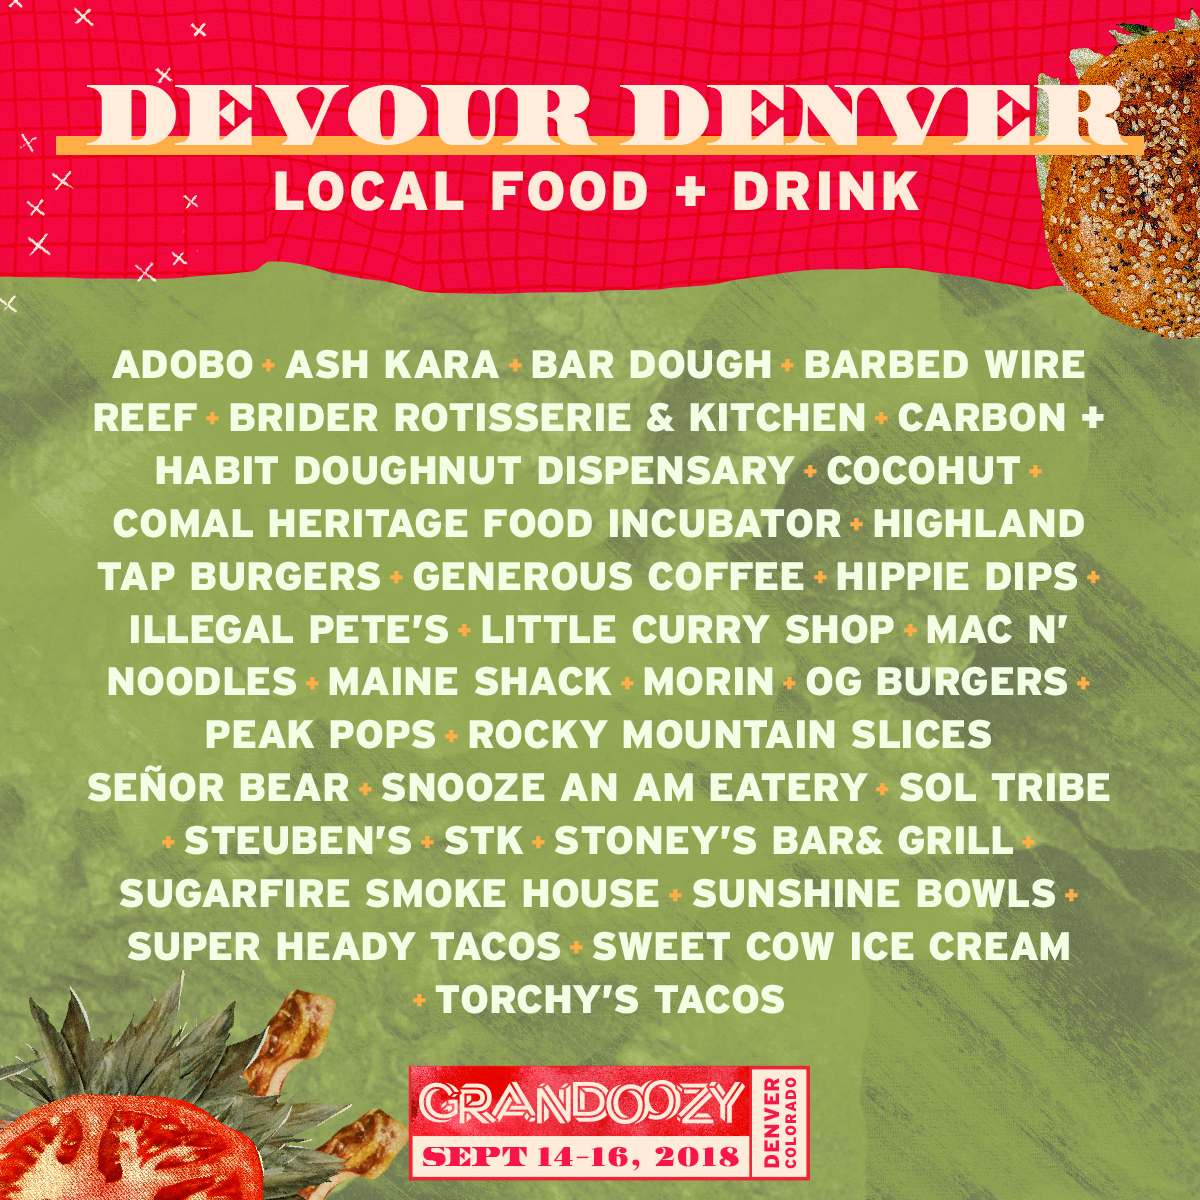 Grandoozy Devour Denver Lineup. Photo provided.